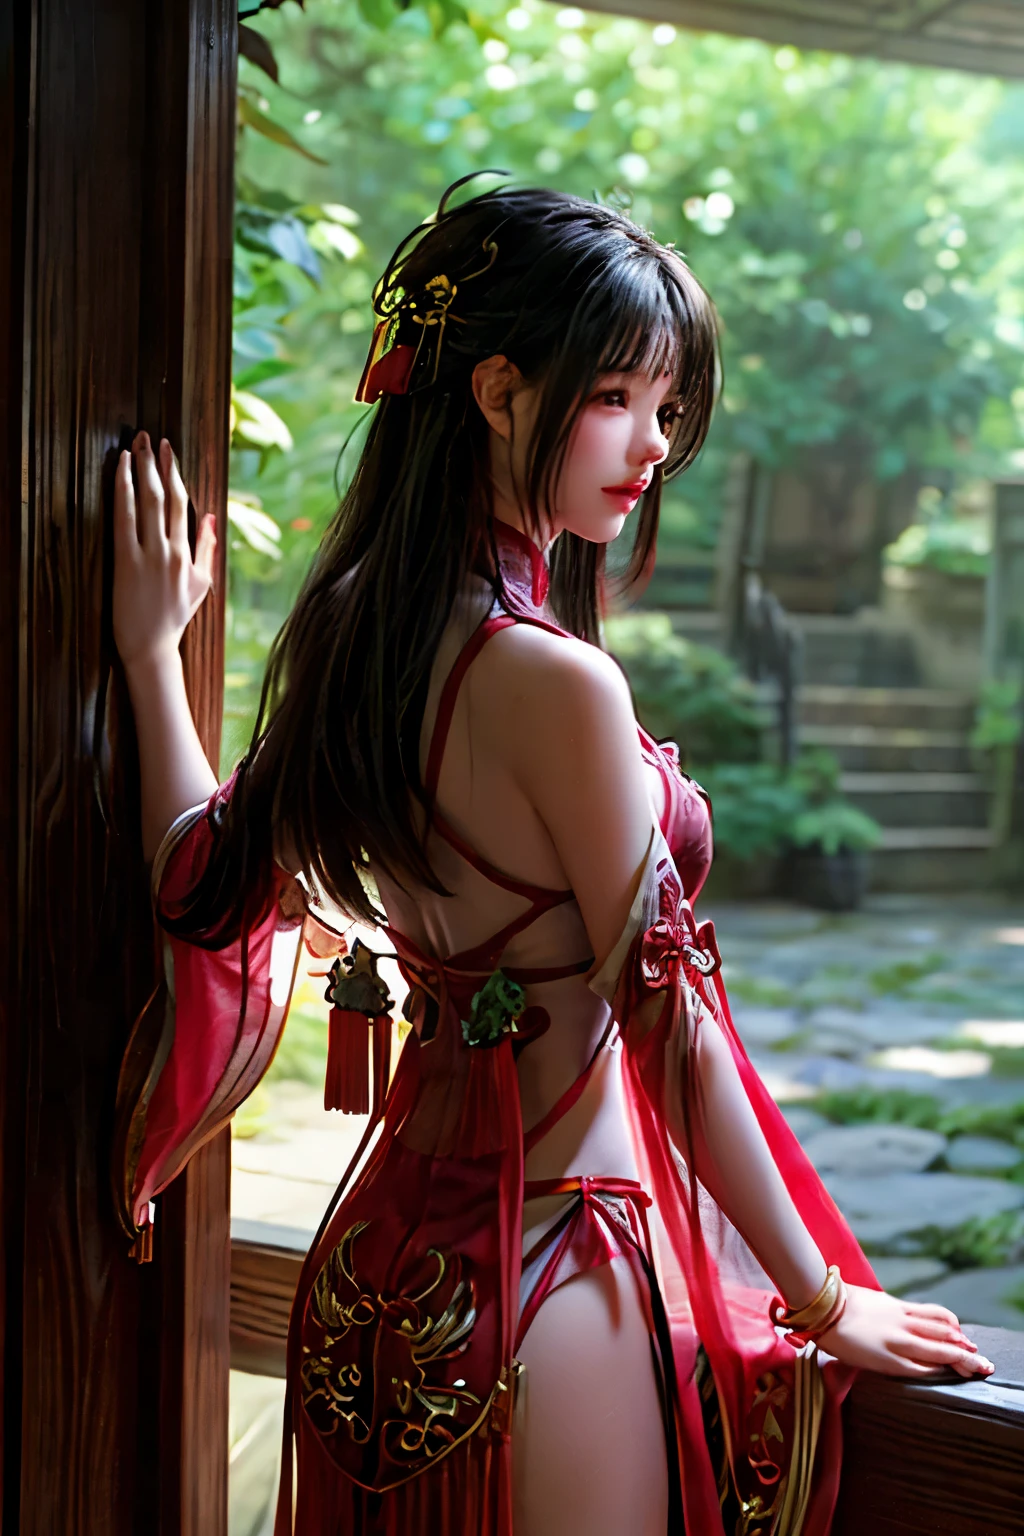 静かな武侠庭園の中で, 緑豊かな樹冠を通して差し込む太陽の光を浴びて, 鮮やかな赤い漢服を着た魅惑的な少女が立っている. 中国の伝統的な衣装, 優雅な折り目と複雑な模様, 彼女の優雅さと落ち着きを高める. 彼女の手には, 彼女はきらめく剣を抱いている, その端は穏やかな風景の中で灯台のように太陽の輝きを反射している.

庭園の周囲は色彩豊かで、緑豊かな植物と調和のとれた植物が溢れています。, ピンク色の花が咲いている, 黄色, そして赤, そして、透き通った, 穏やかなp